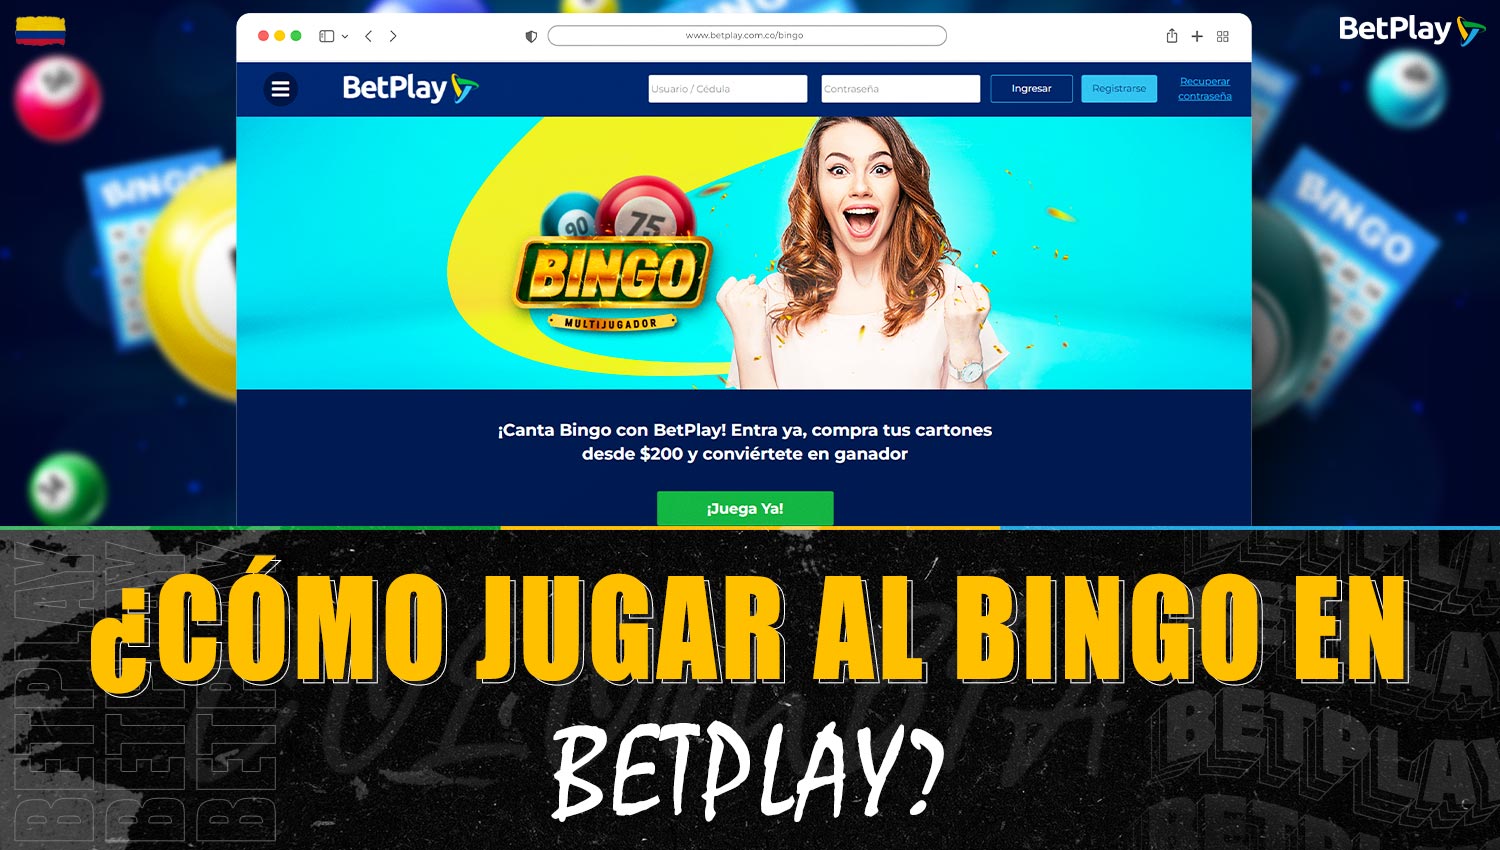 Guía de juego del "Bingo" en la plataforma Betplay Colombia